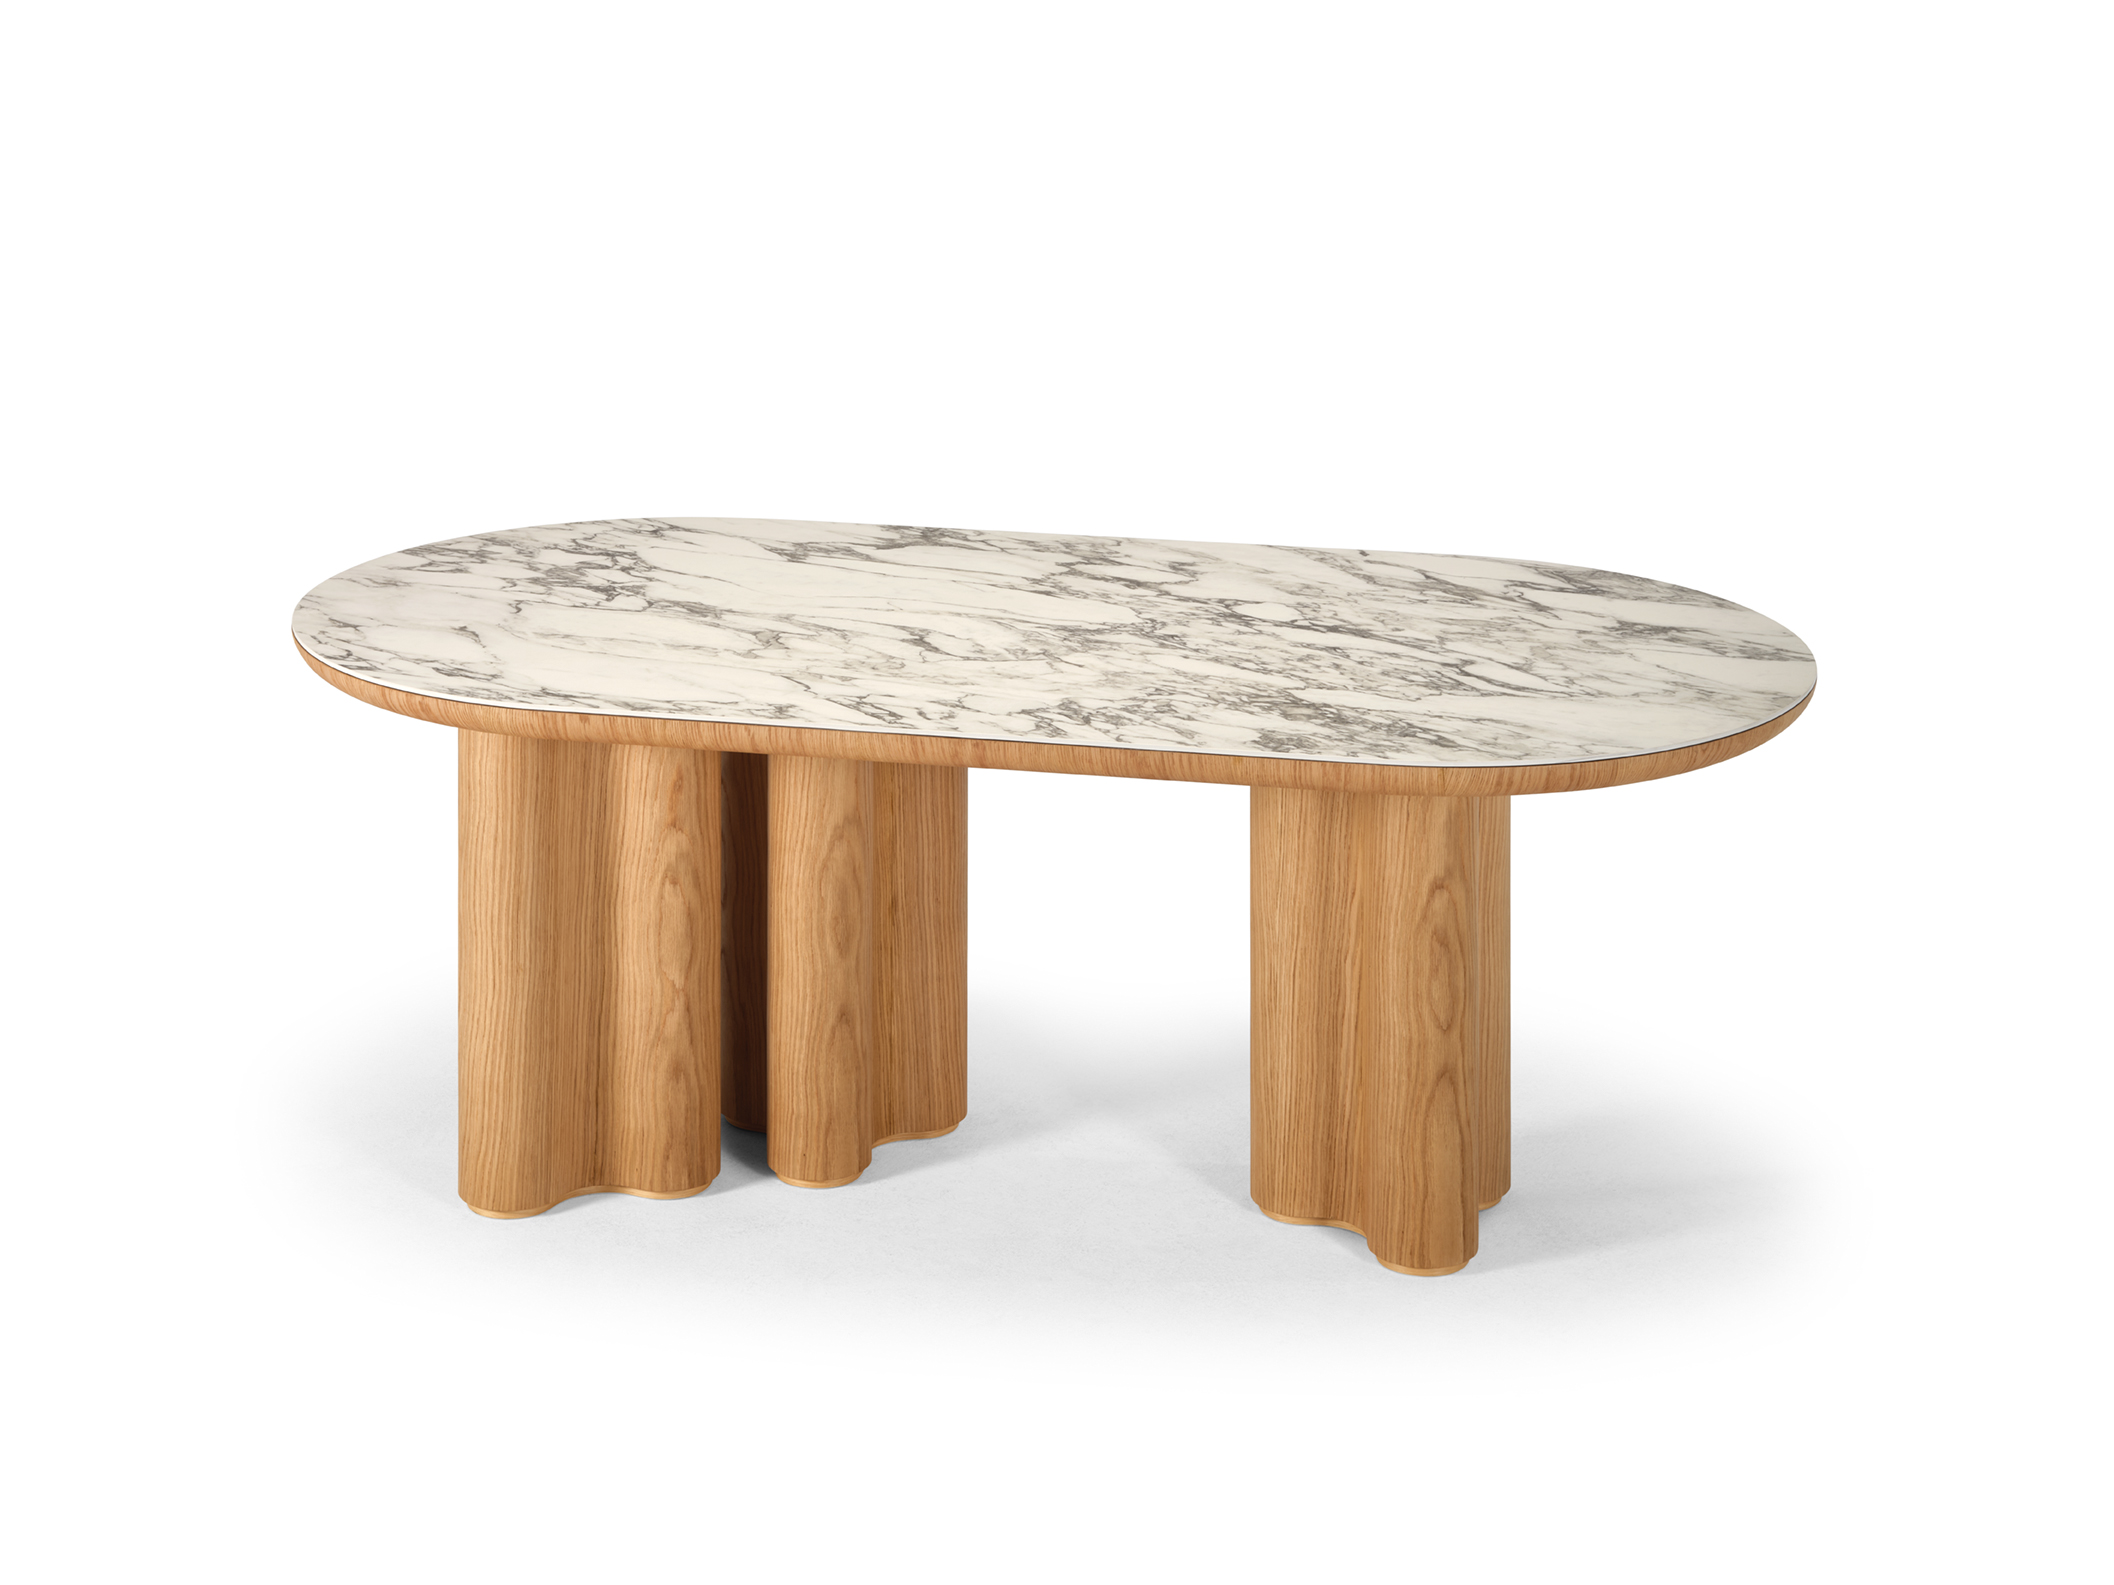 Saori Dining Table from Salma Furniture, in solid wood 